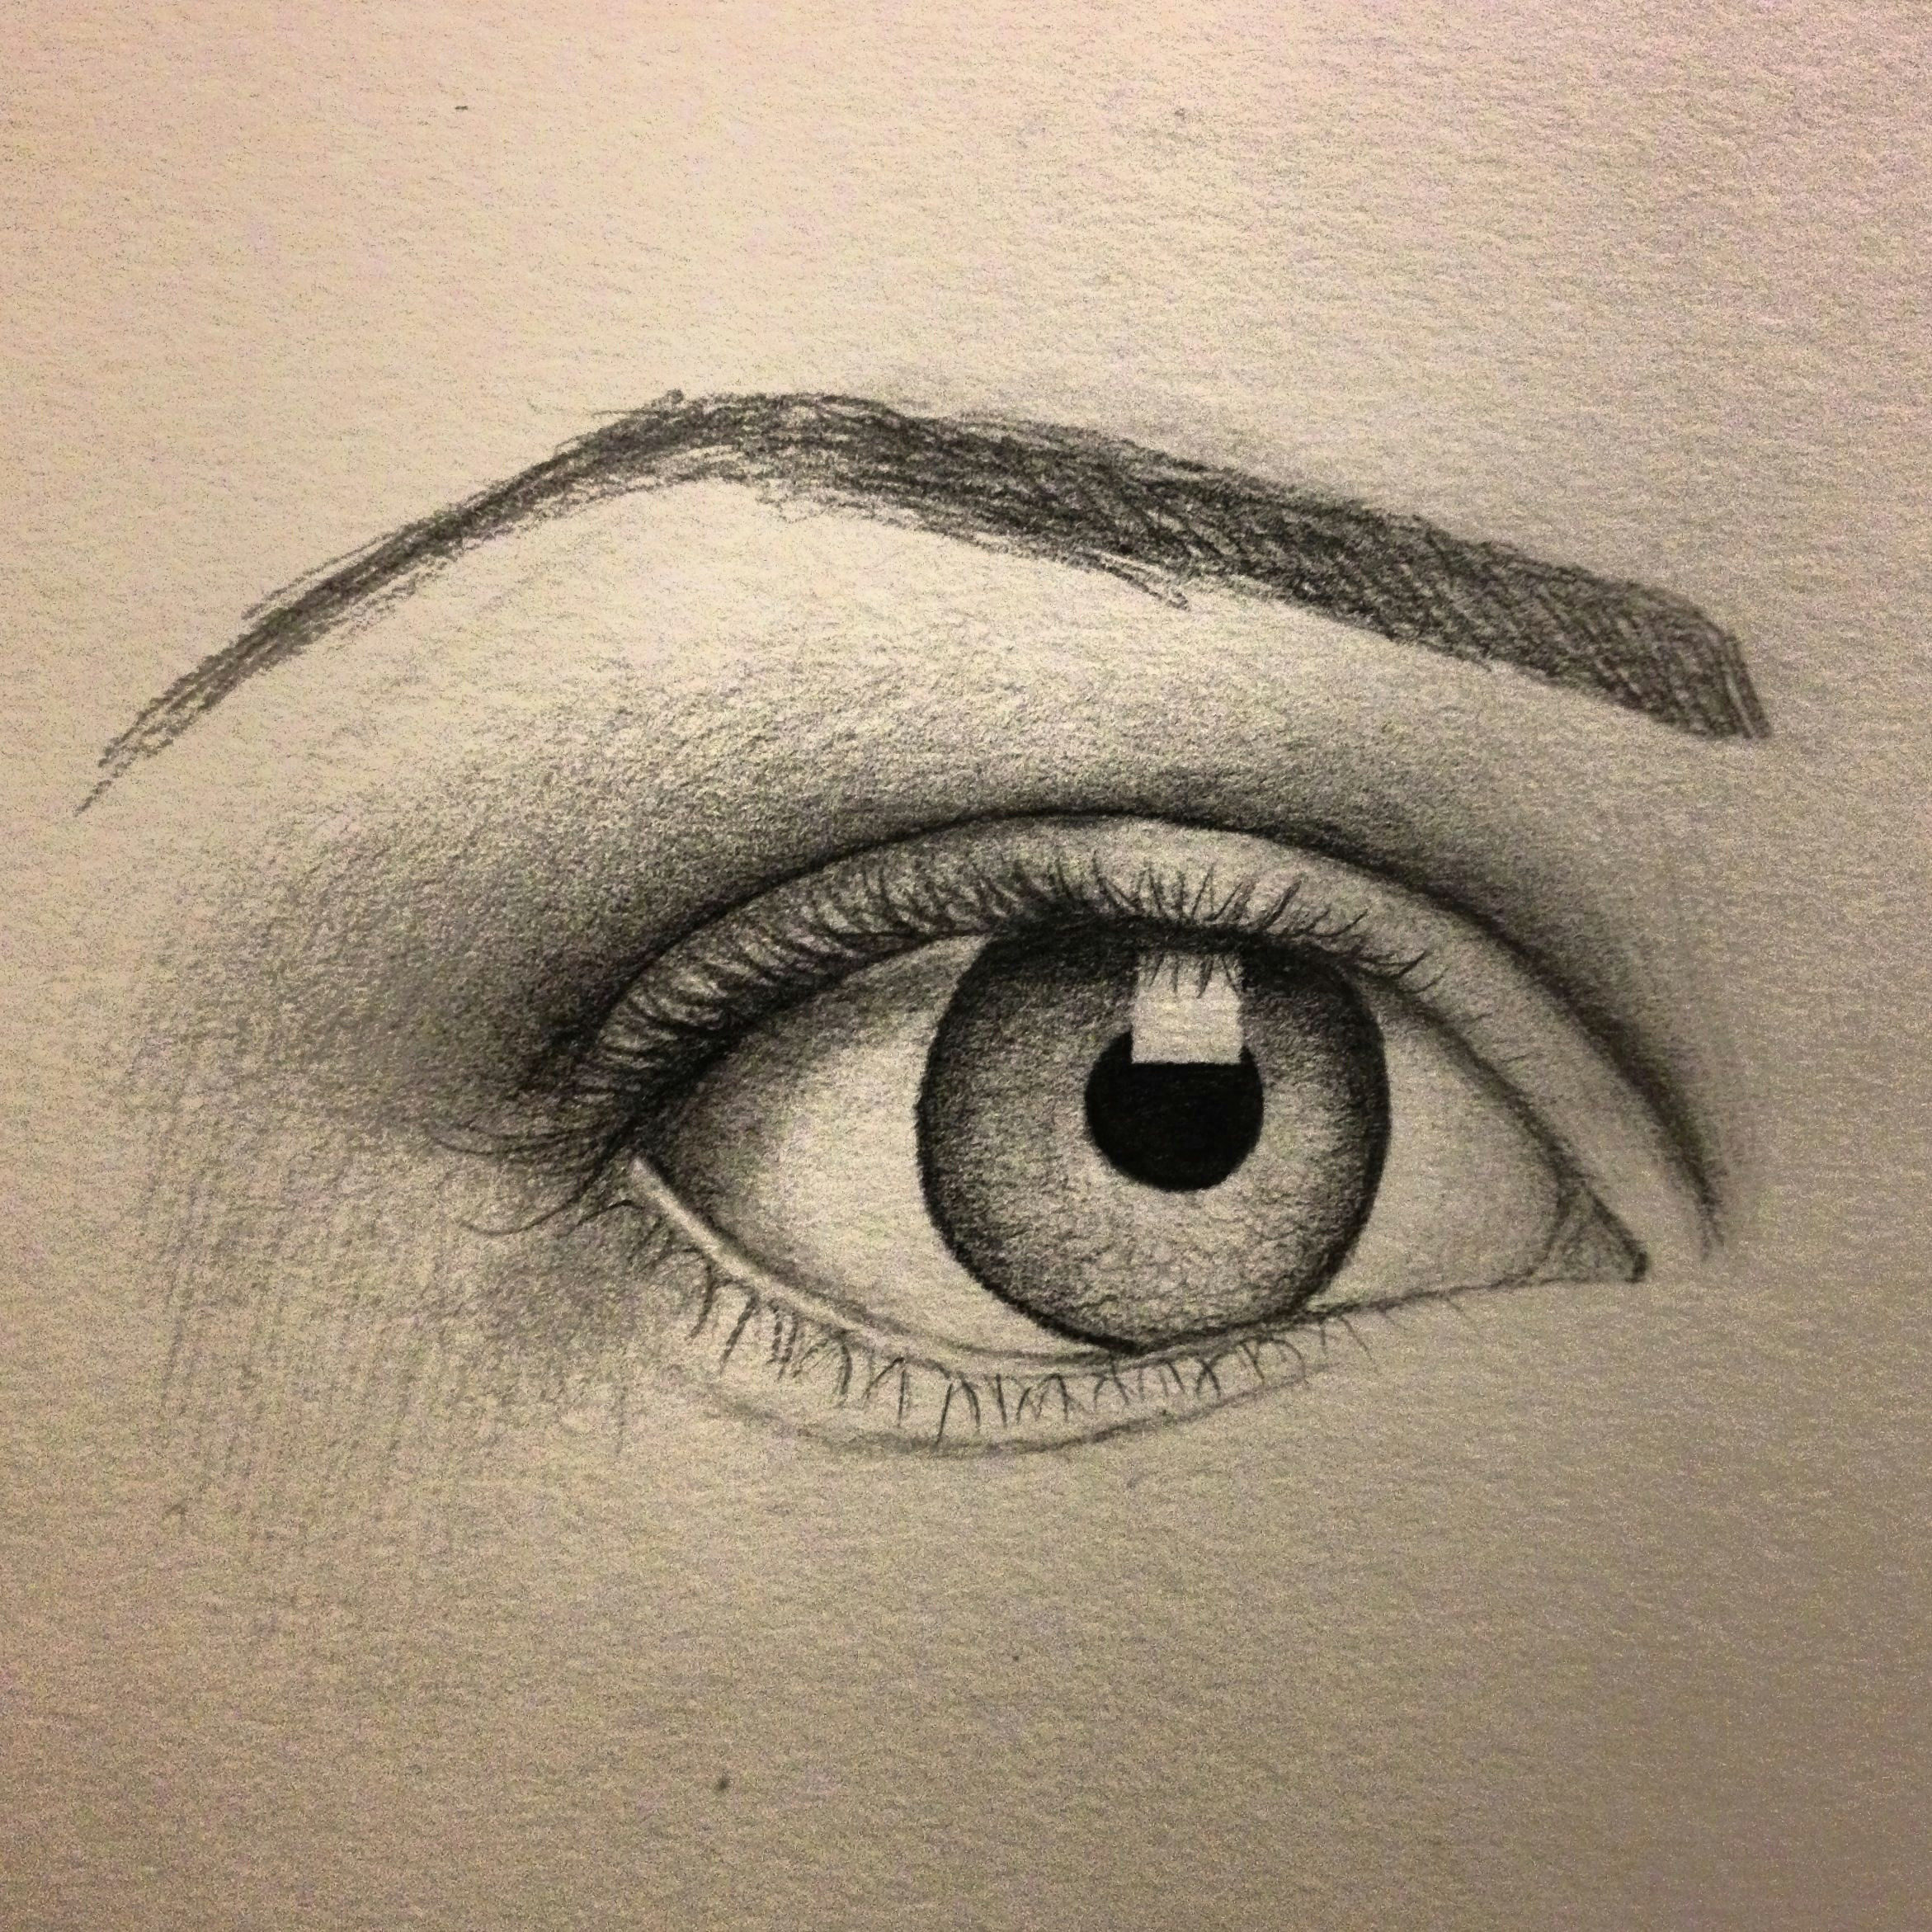 Unique Drawings Of Eyes Eye Sketch Artist Pamela White Tattoos Pinterest Drawings